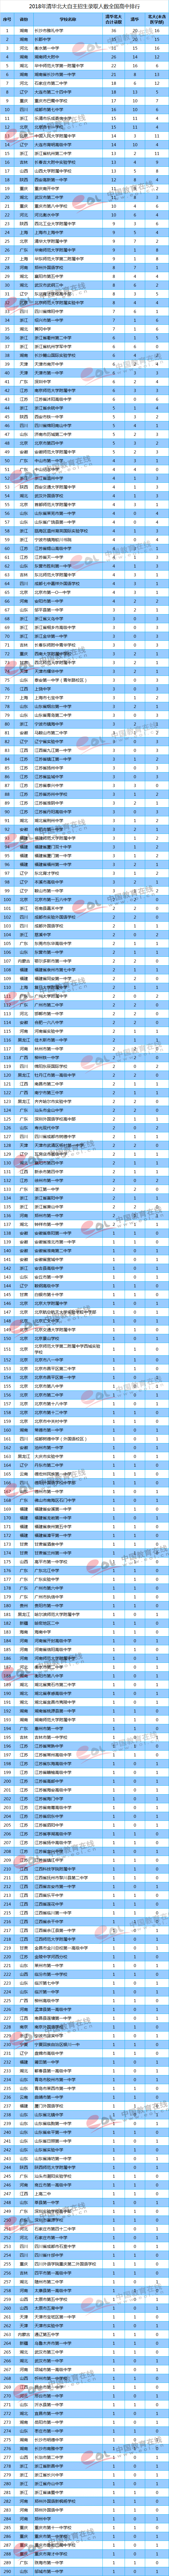 2018年清华北大自主招生录取人数全国高中排名